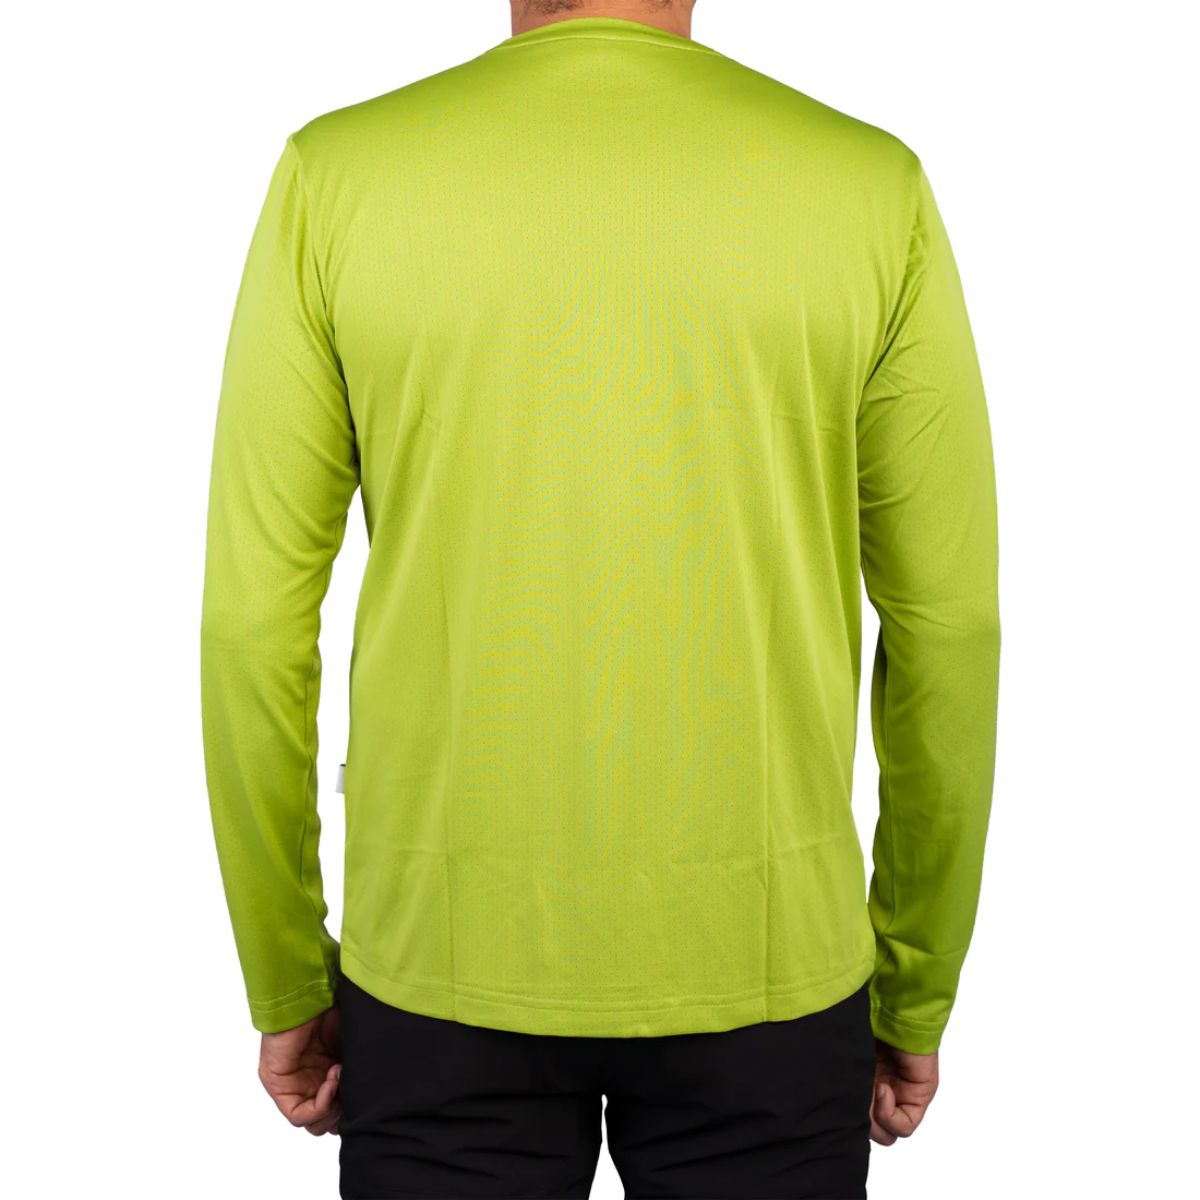 Trekking T-Shirt - Explorer Series - Light Green 3